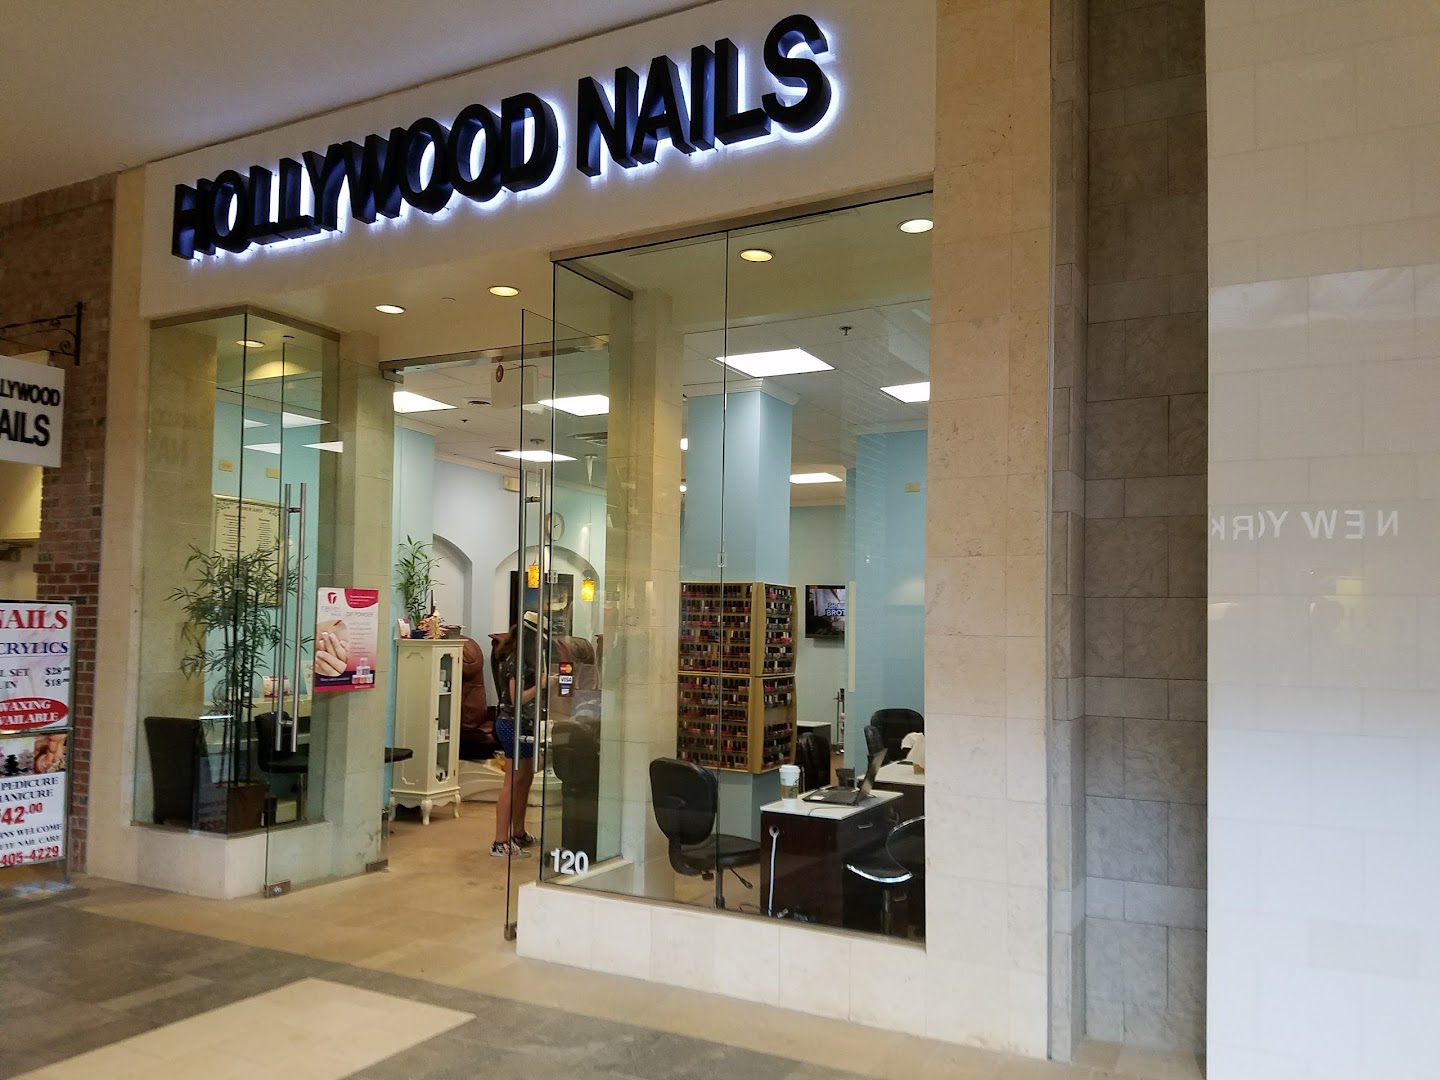 Hollywood Nails